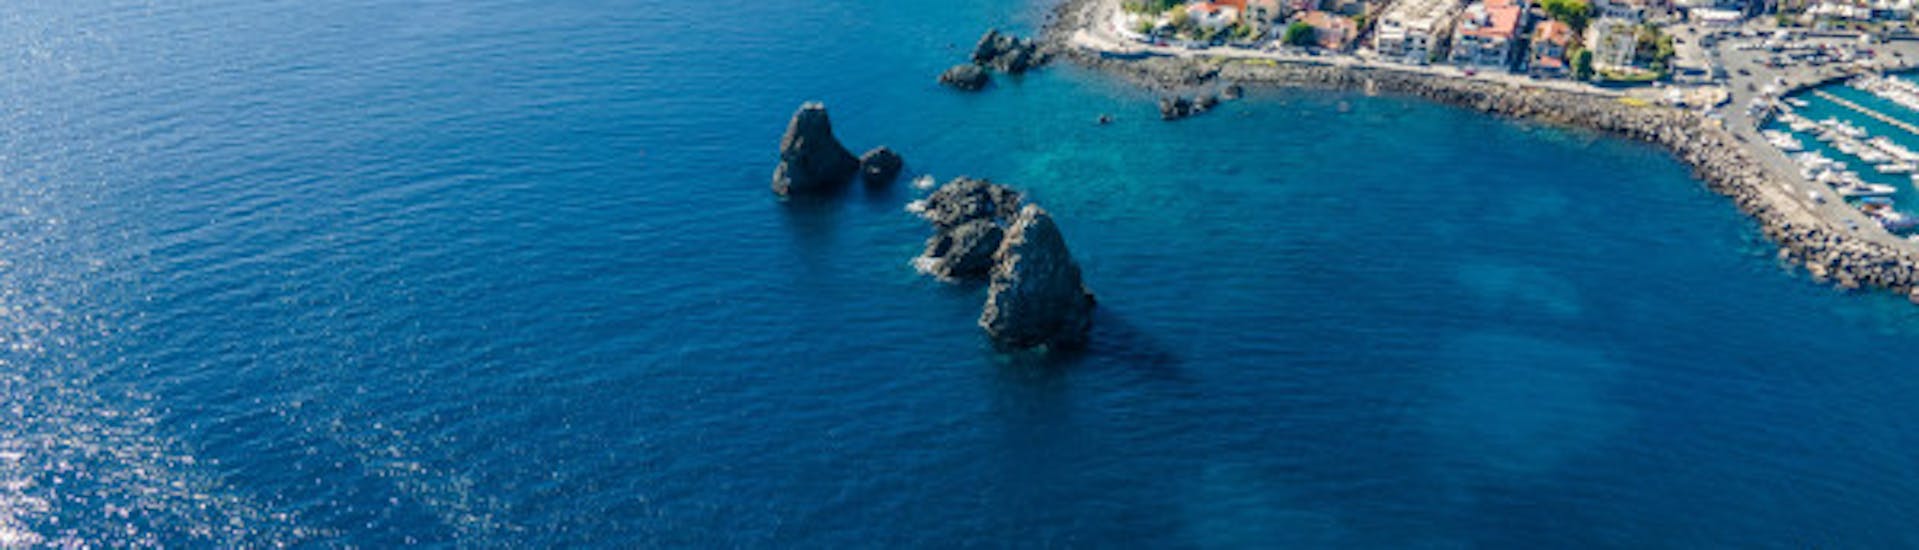 Balade en bateau Aci Trezza - Isola Lachea  & Visites touristiques.